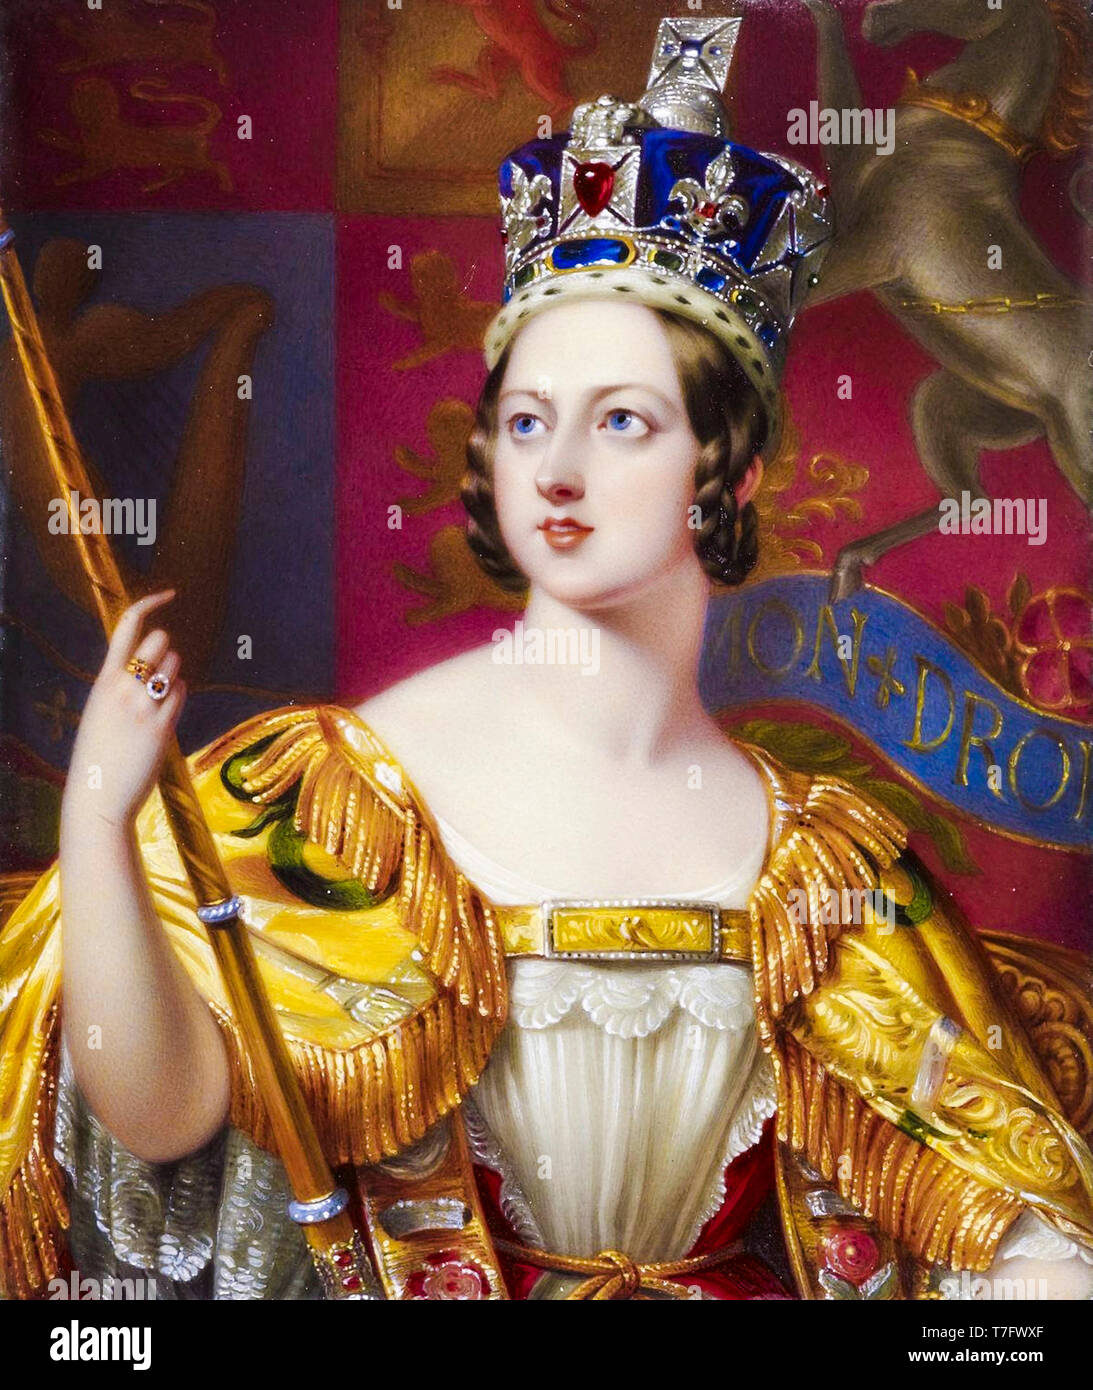 Queen Victoria in ihrer Krönung Roben mit der Imperial State Crown, Porträt, 1843 Stockfoto